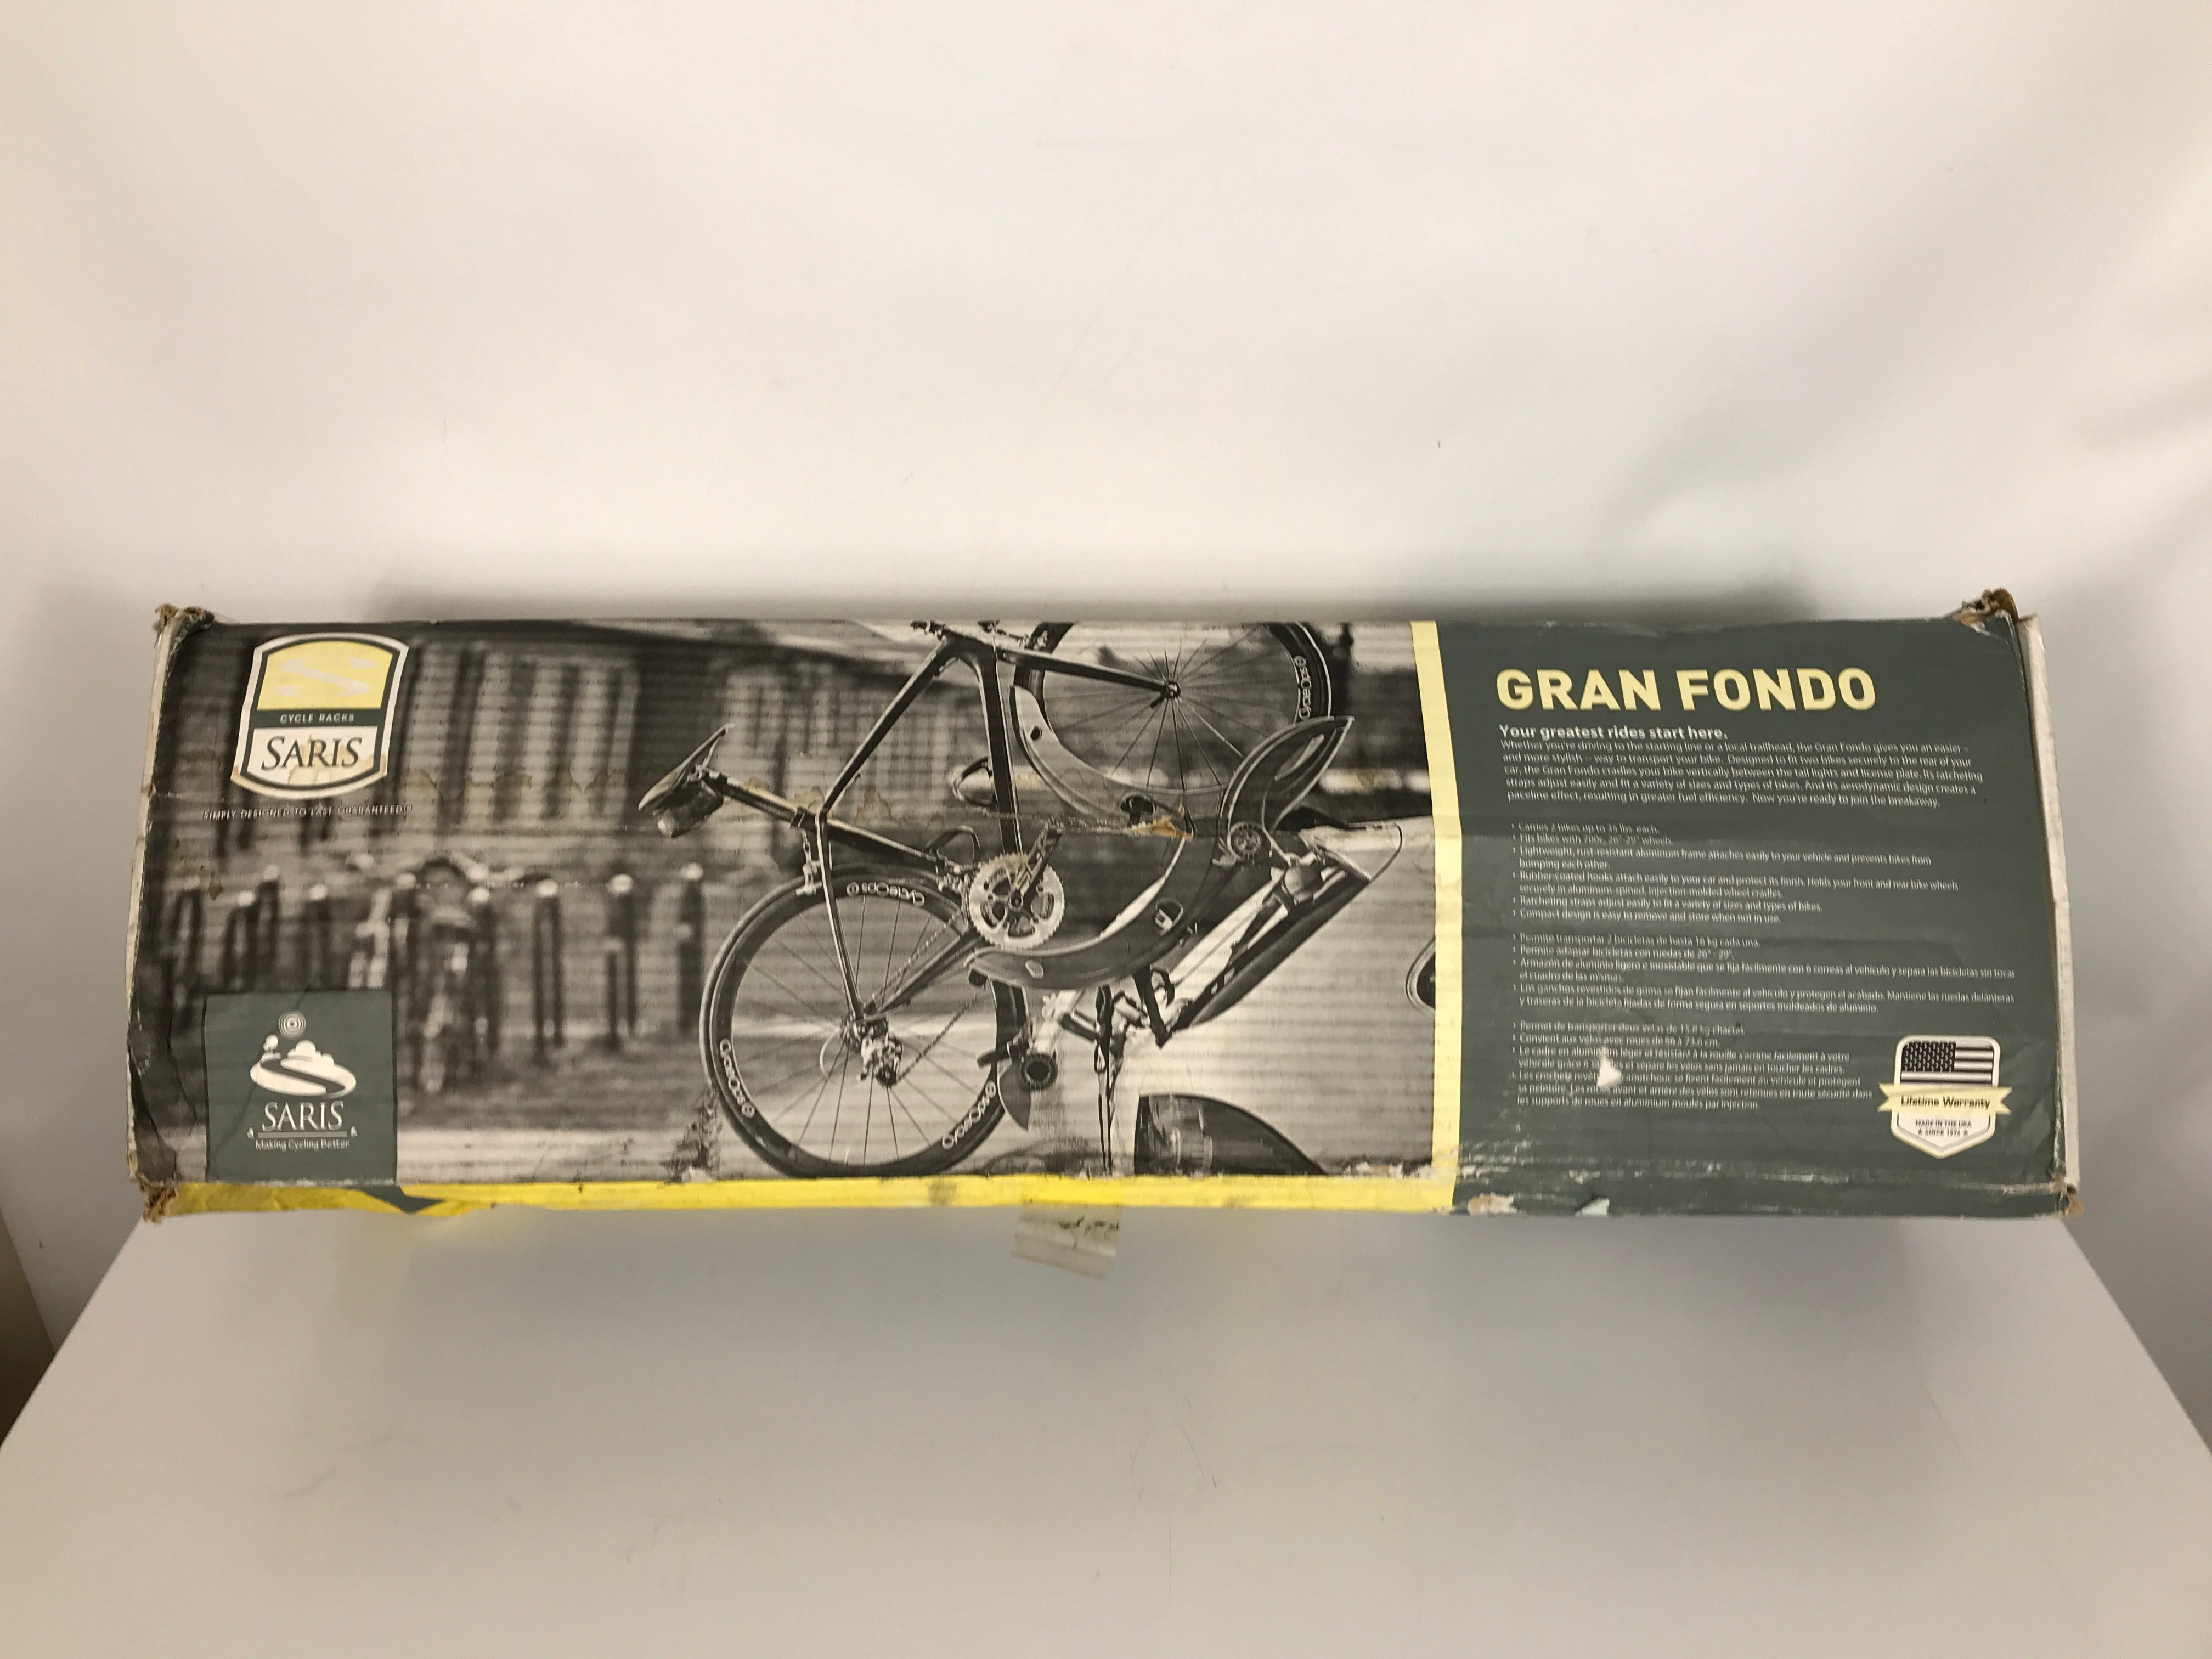 Saris 872 Gran Fondo 2 Bike Car Rack *New in Box*